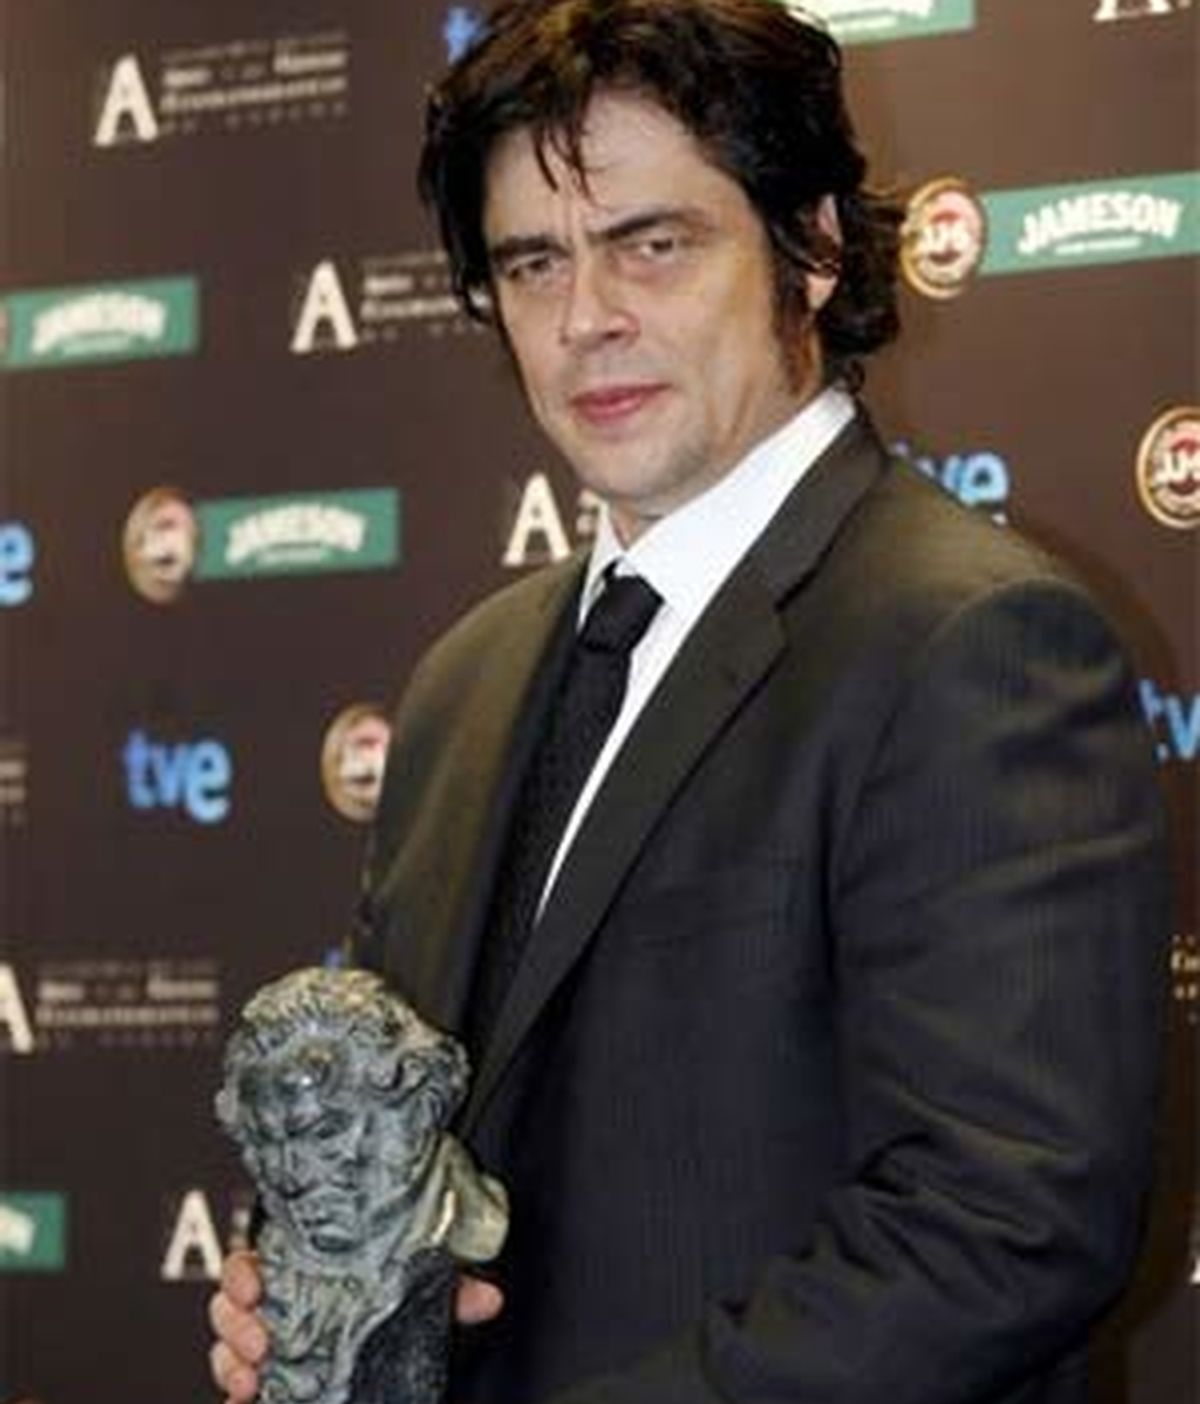 El actor Benicio del Toro, por su trabajo en la película 'Che, el argentino', ha recibido el reconocimiento de la Academia de Cine. Foto: EFE.